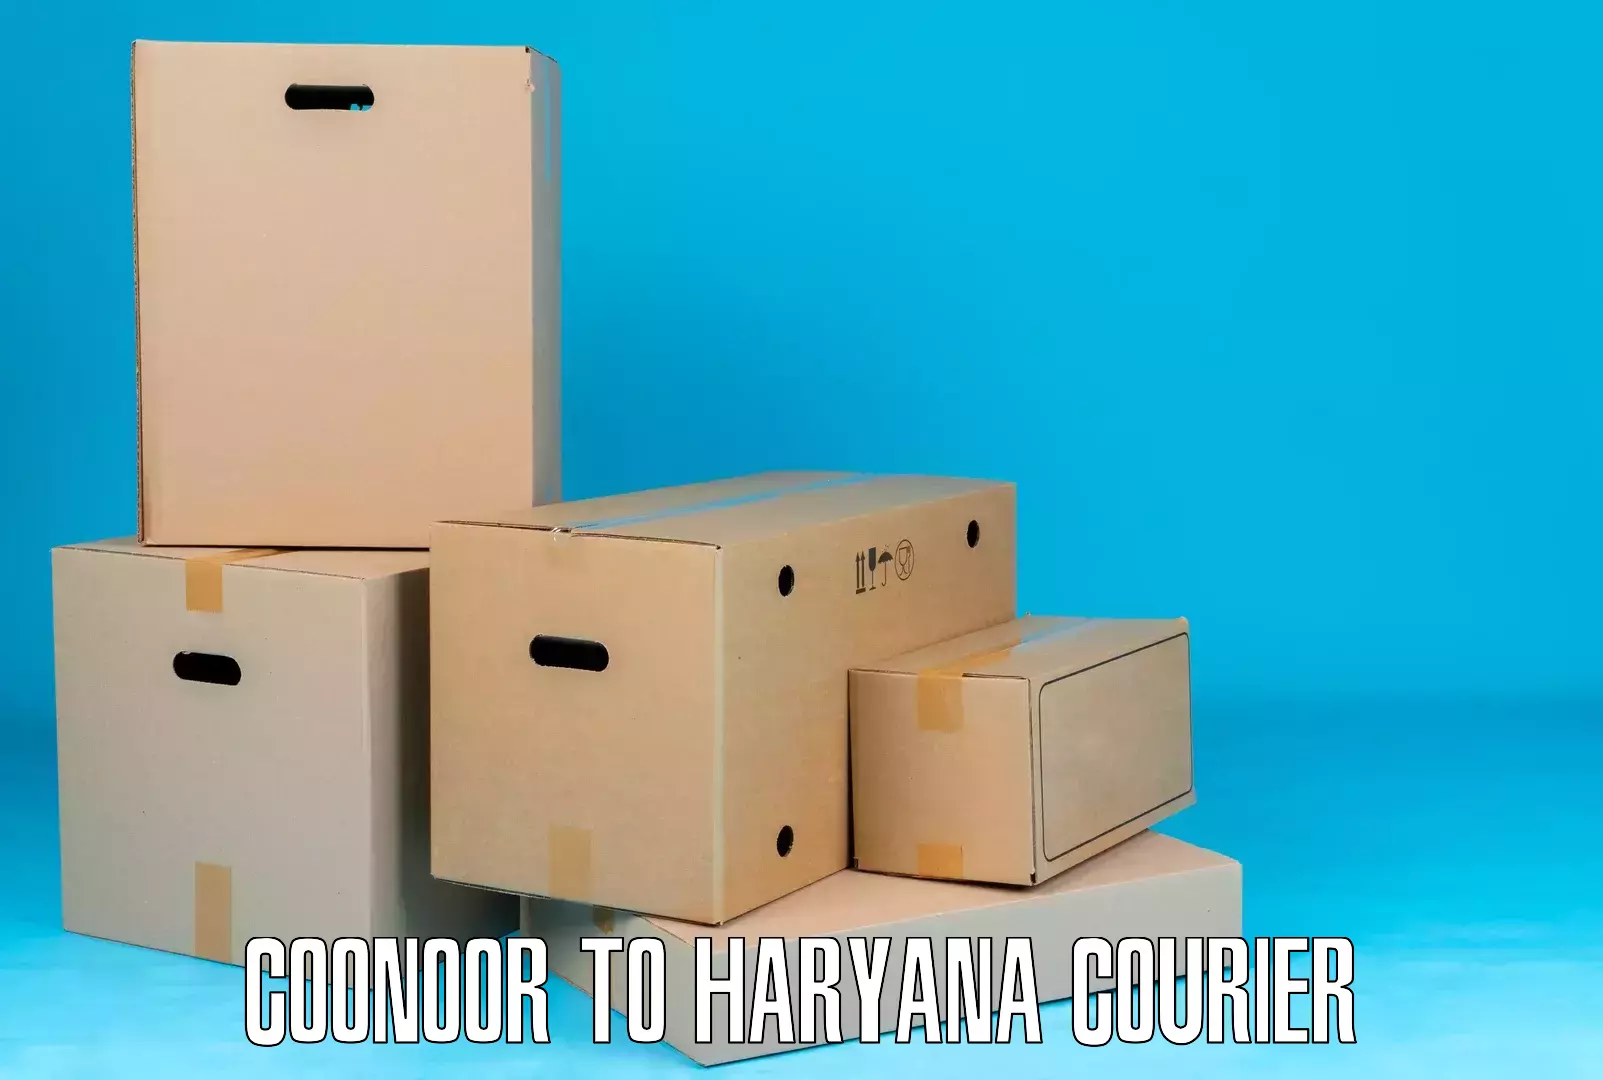 High-capacity shipping options Coonoor to Yamuna Nagar